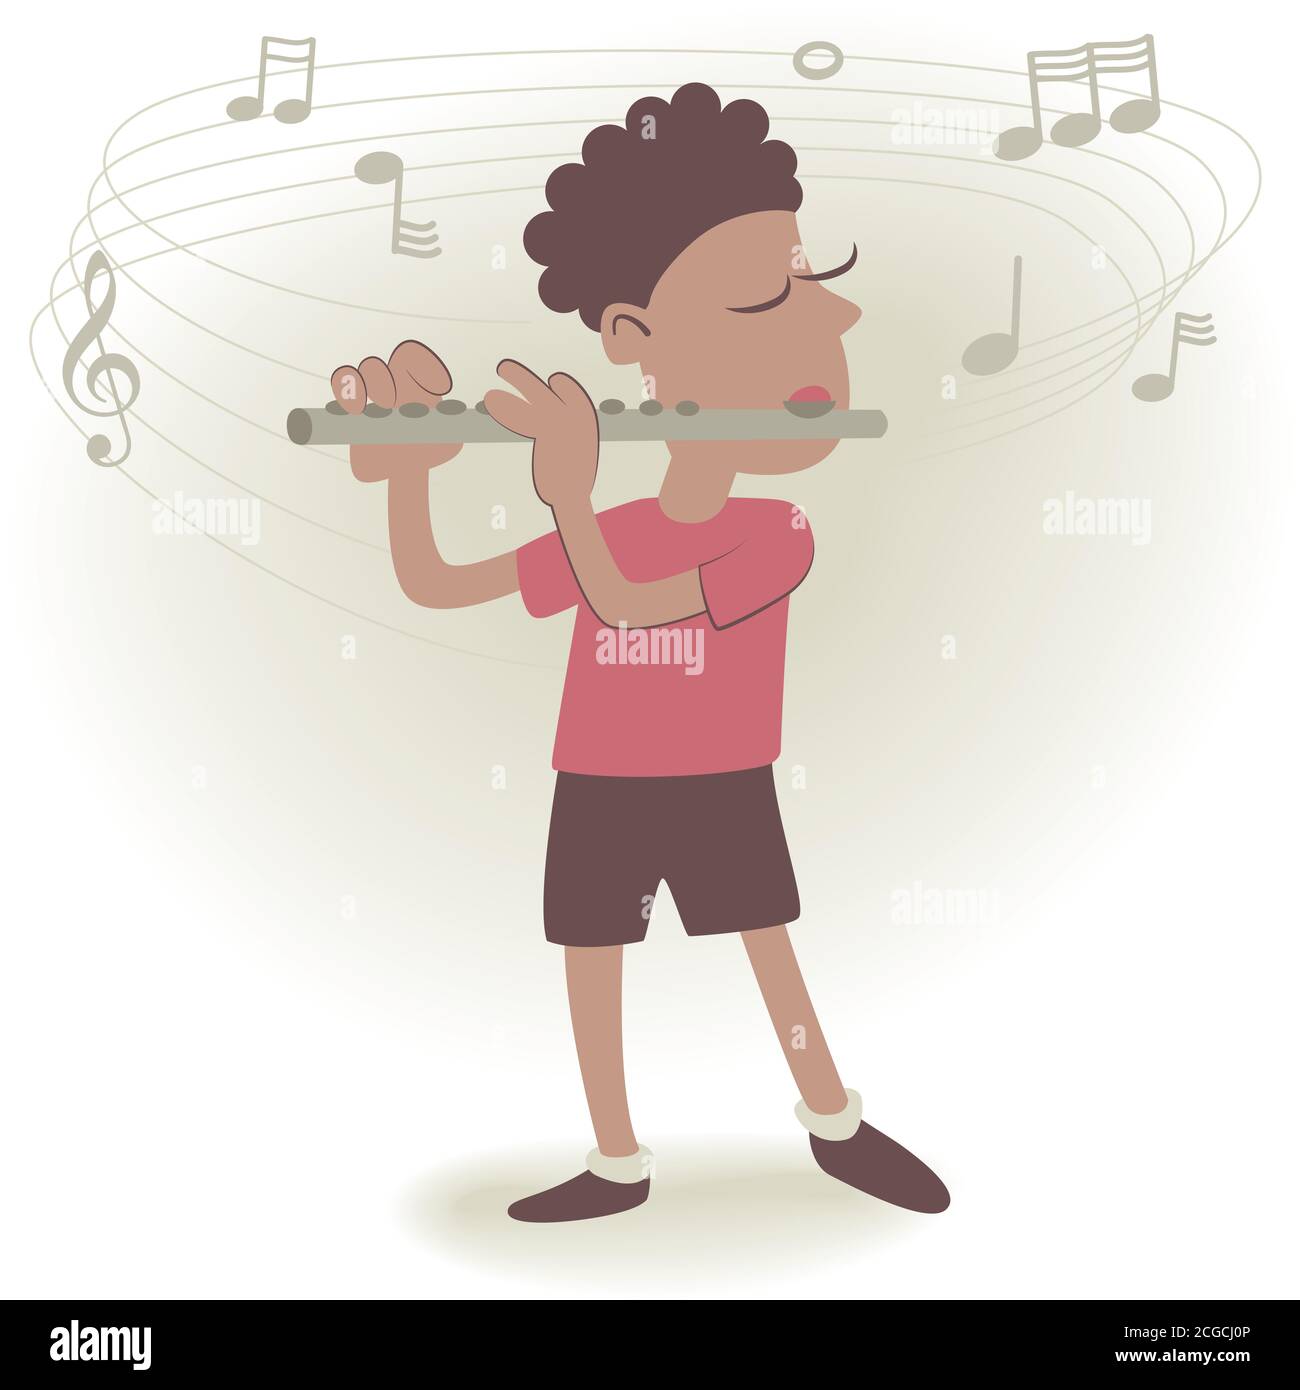 Illustrazione in stile retrò di un ragazzino che suona il flauto. Illustrazione Vettoriale